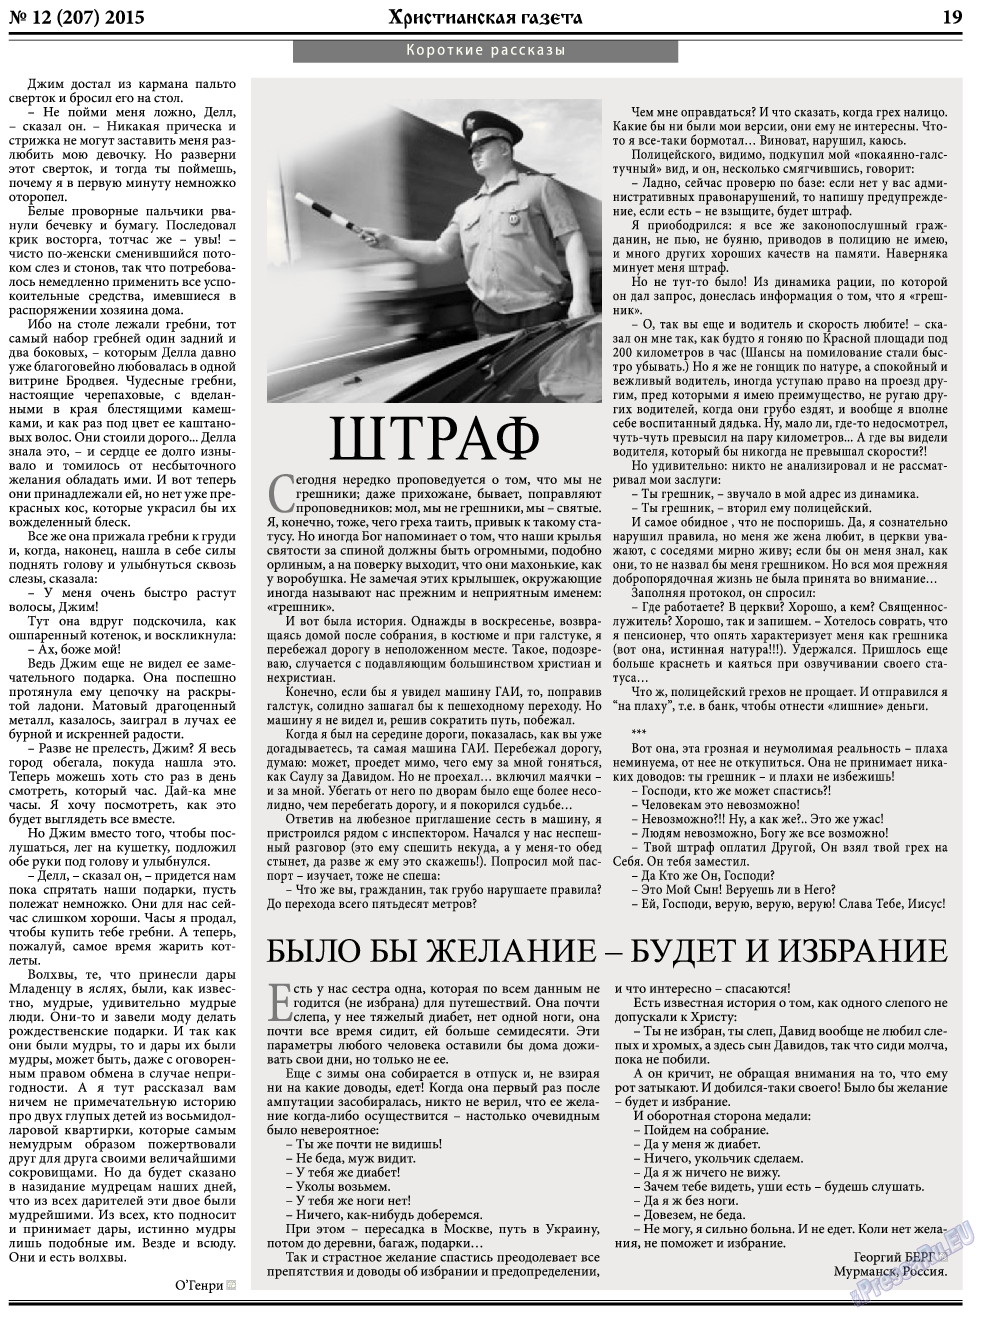 Христианская газета, газета. 2015 №12 стр.27